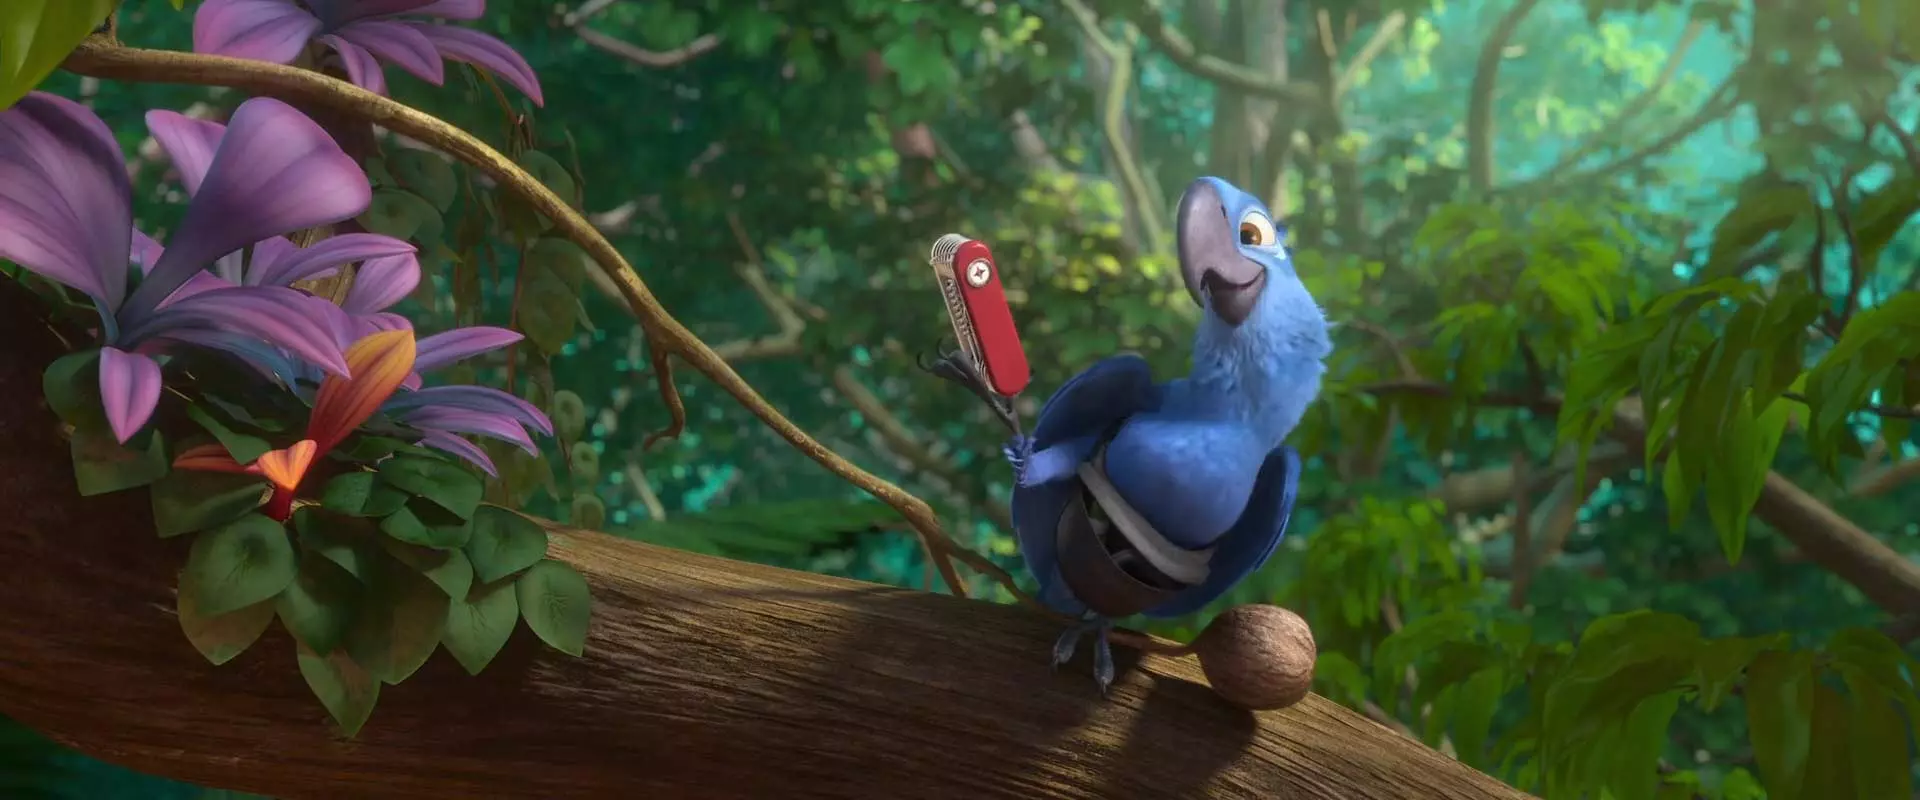 طوطی آبی رنگ به نام بلو در انیمیشن ریو